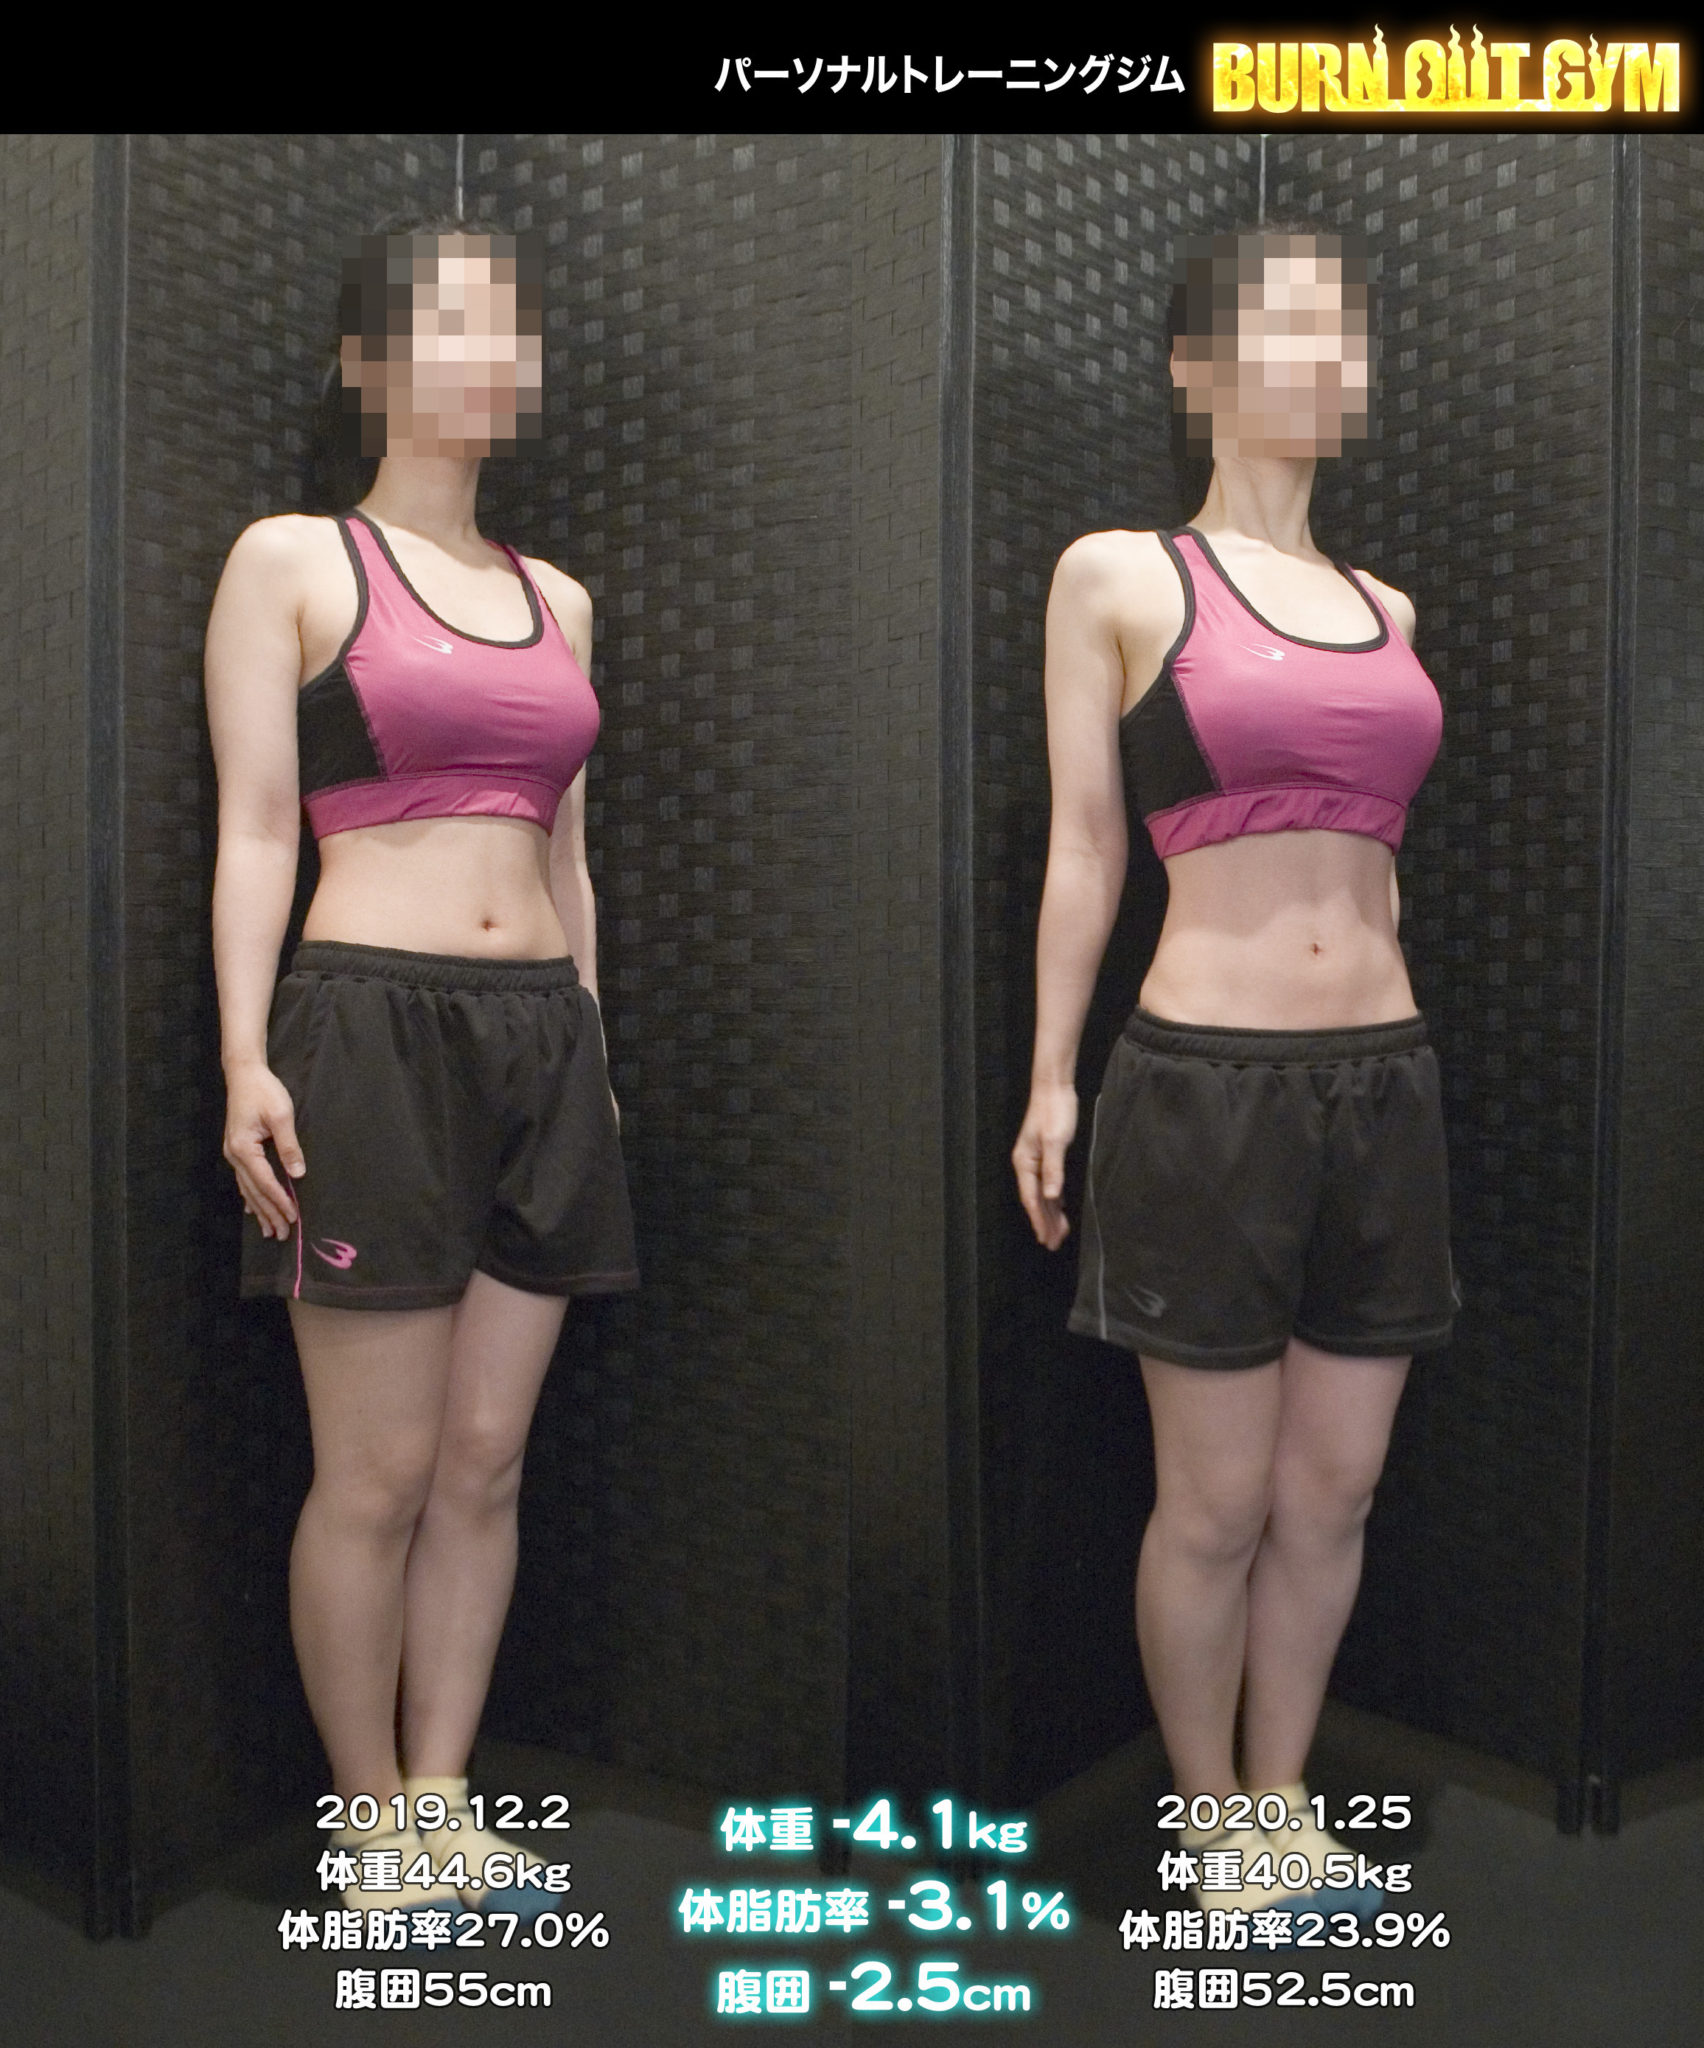 体験者 30代 女性 身長150cm台N・Iさんのダイエット事例 パーソナルトレーニング・ダイエットジム BURN OUT GYM